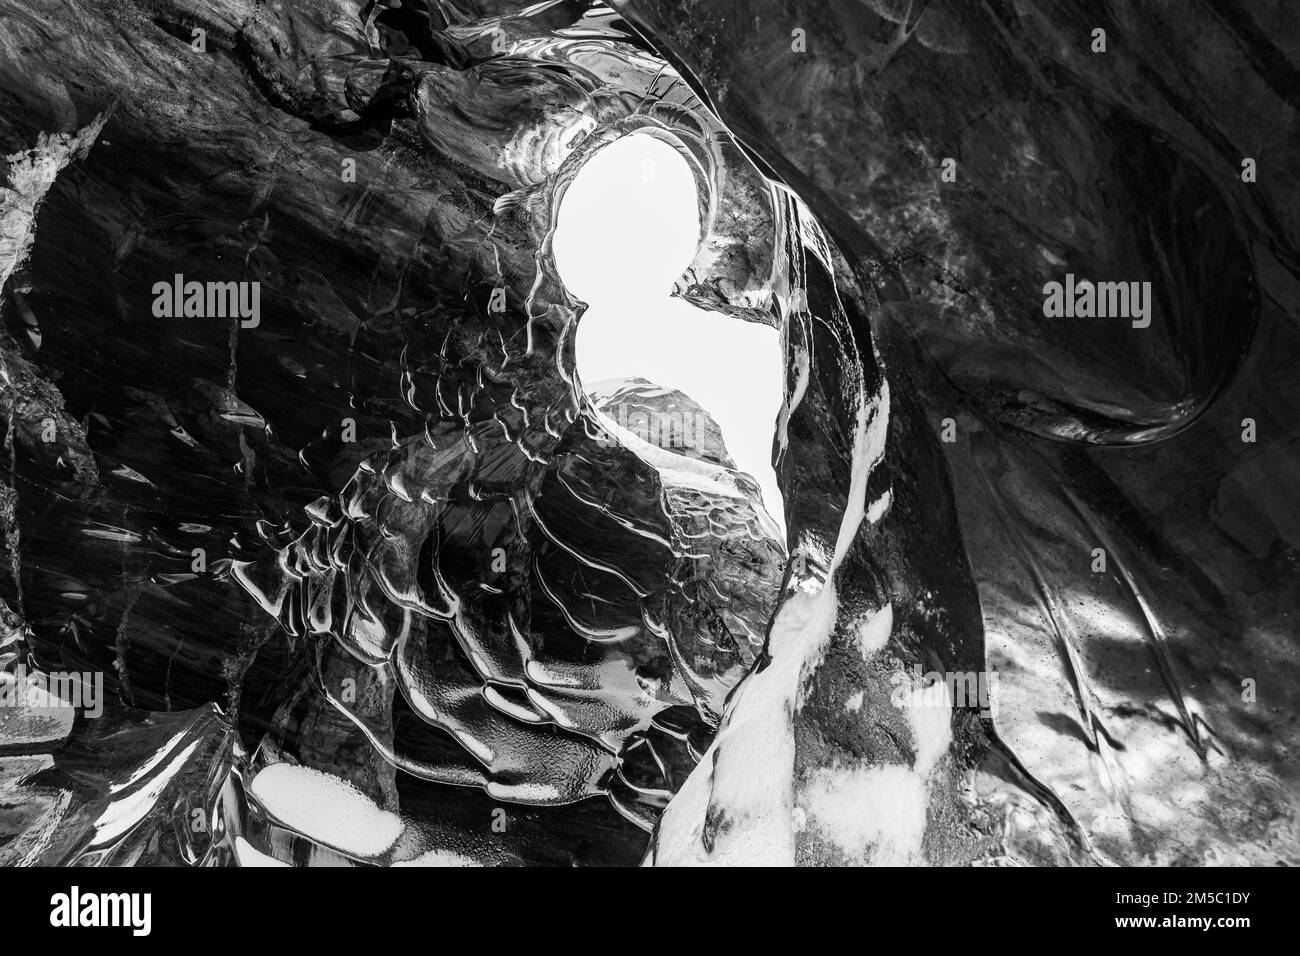 Grotta di ghiaccio aperta in cima con pettini di ghiaccio ricoperti di neve, foto in bianco e nero, grotta di ghiaccio Proeng, Sudurland, Islanda Foto Stock